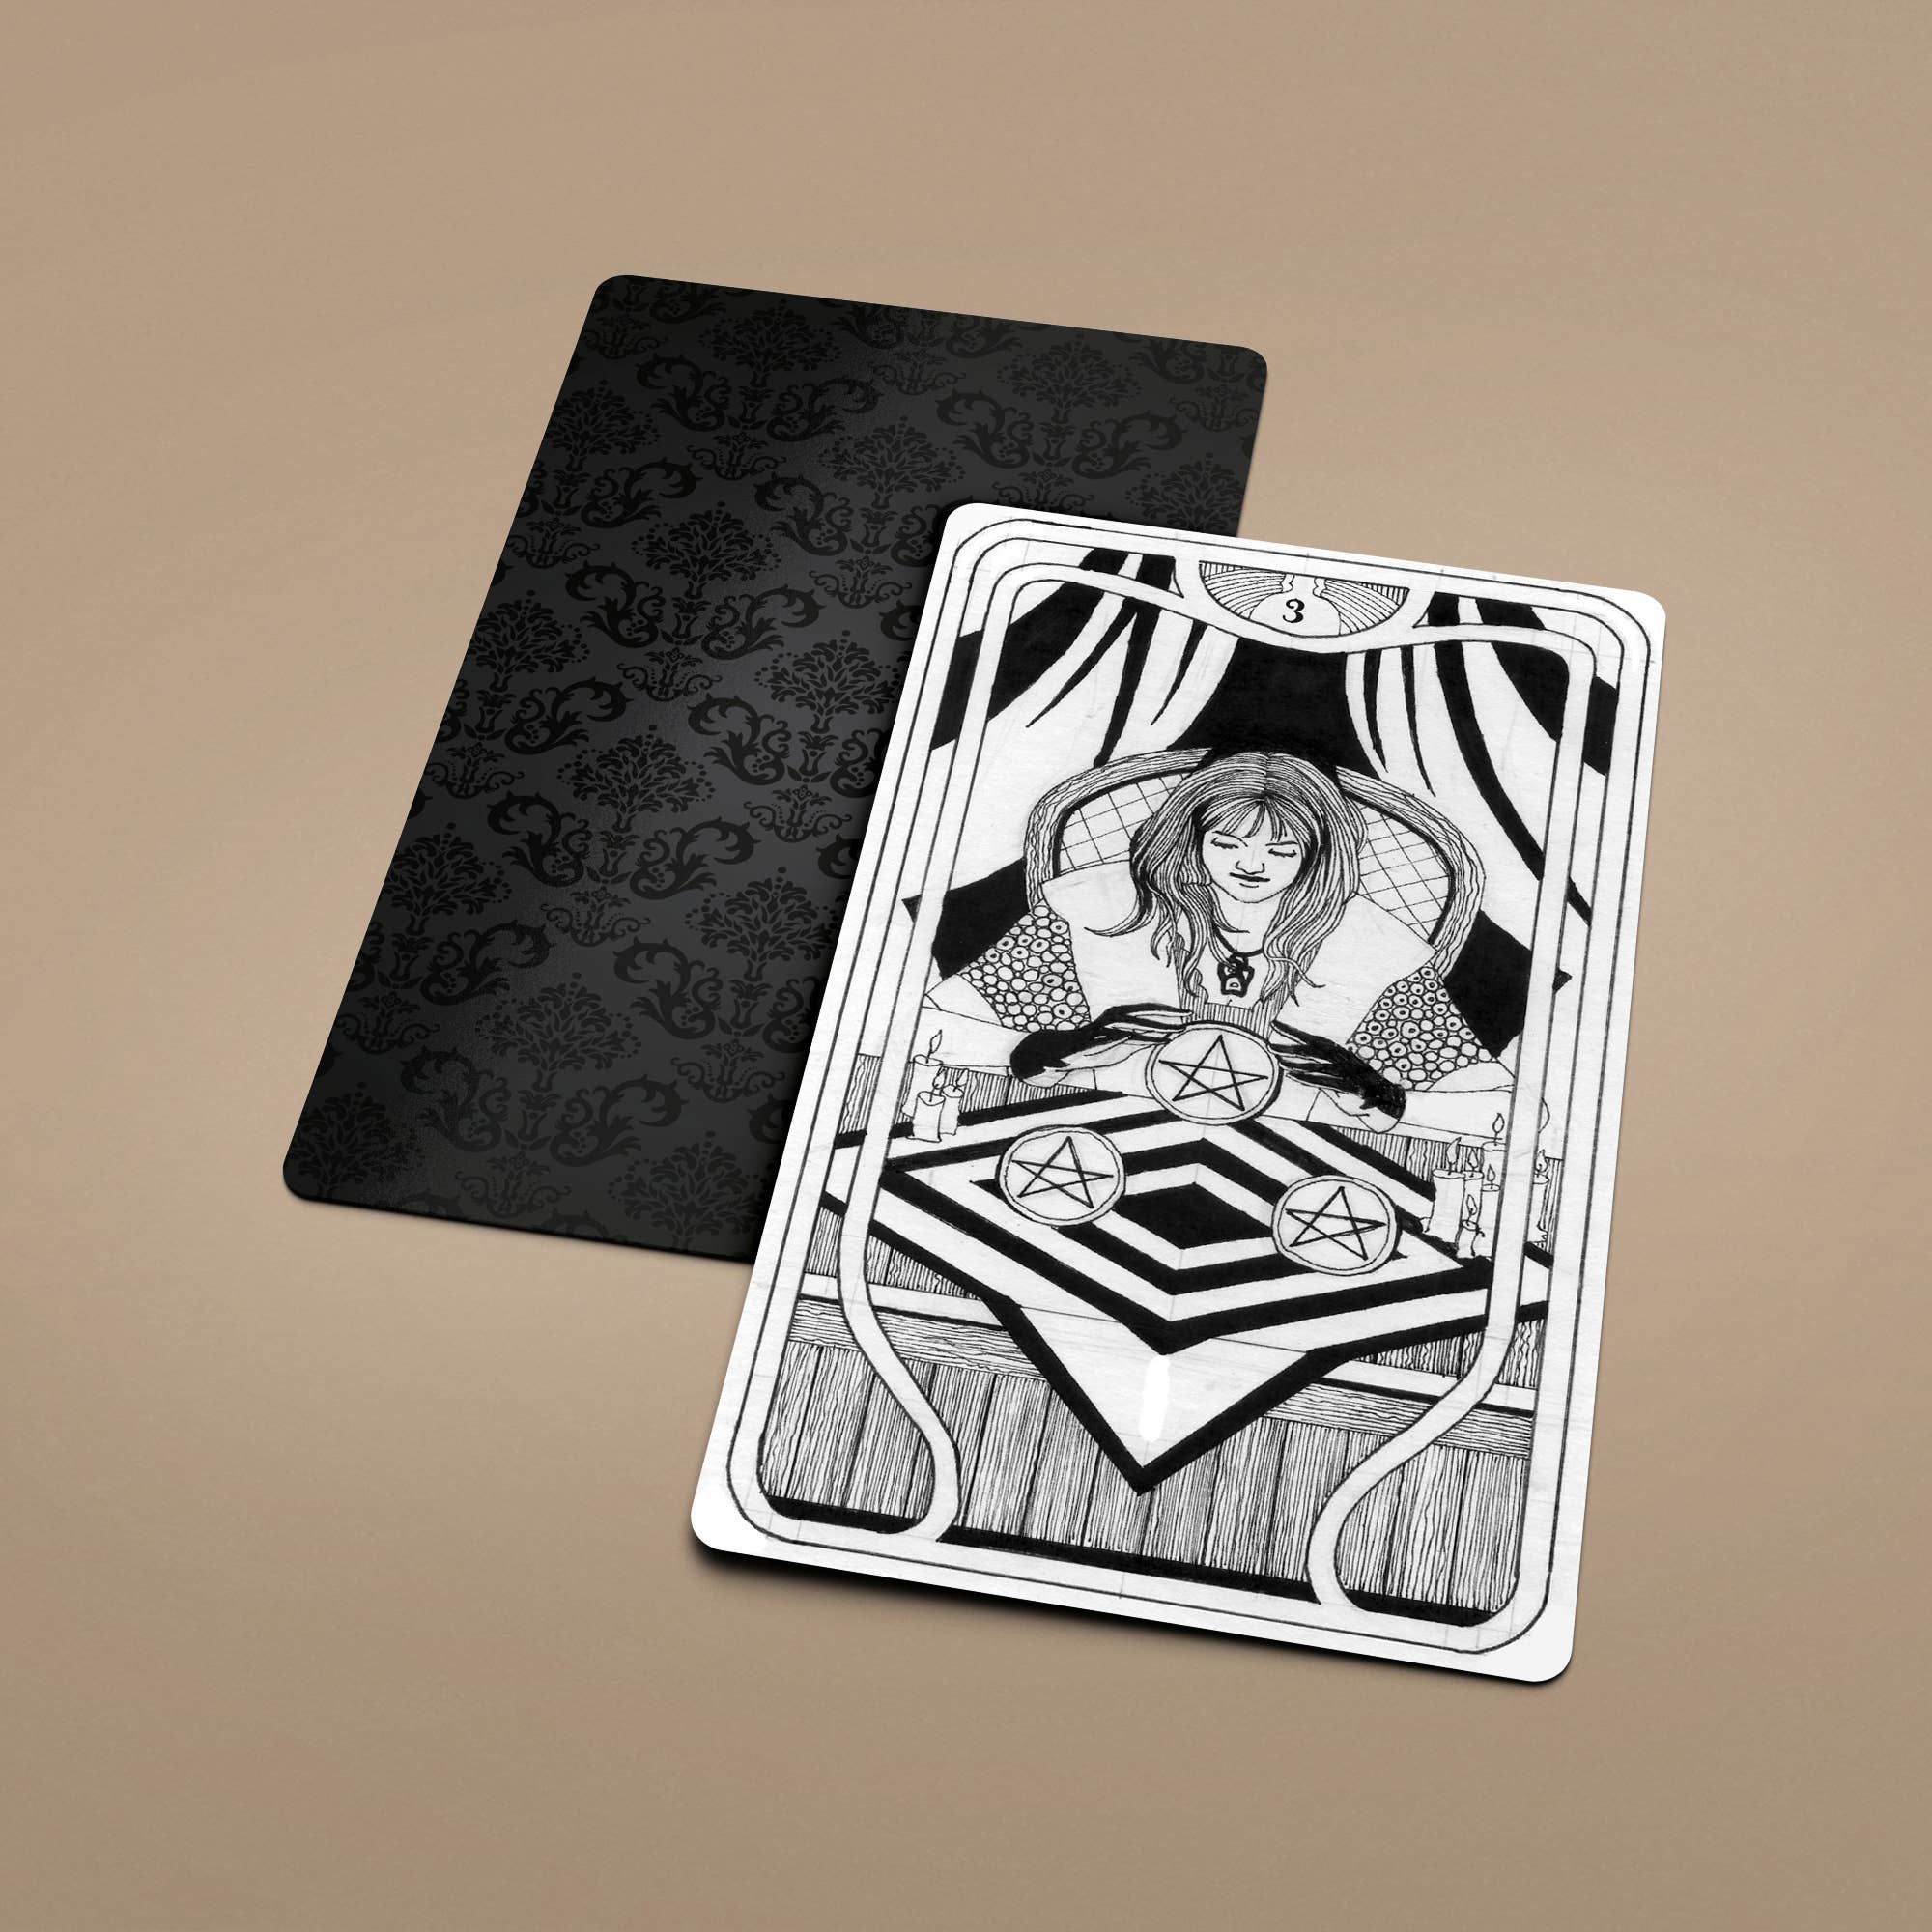 Royal Court Tarot 78+2 Extra Cards Deck